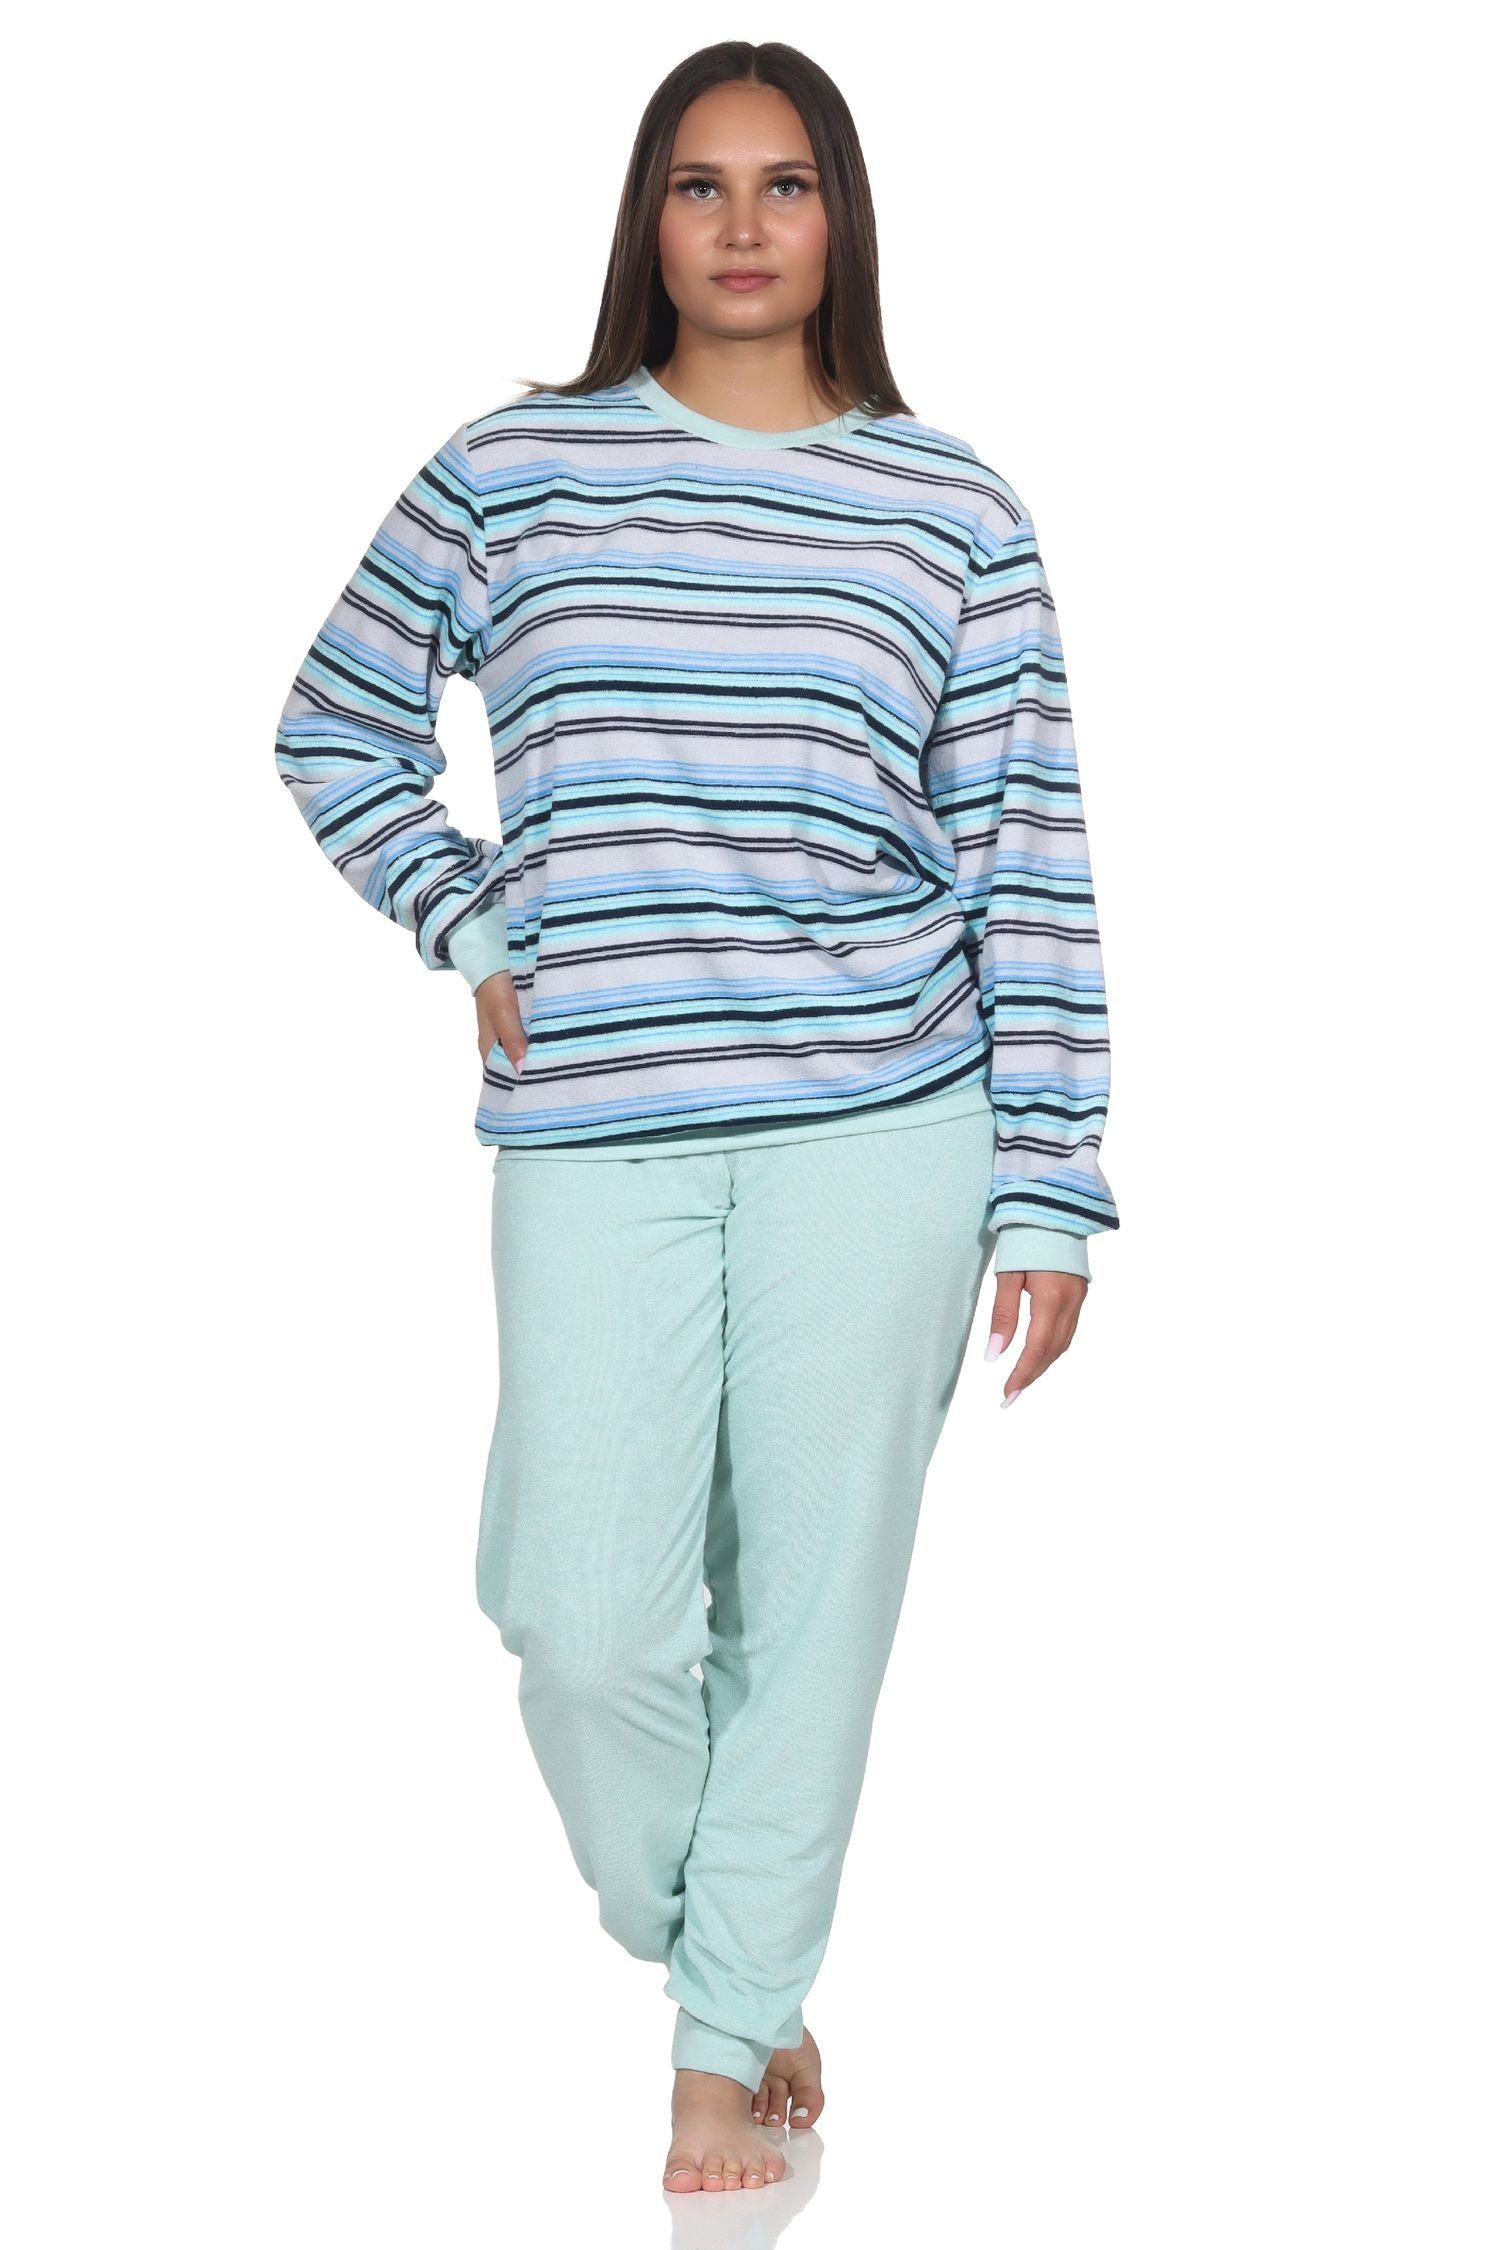 in Bündchen Schlafanzug Damen Pyjama mit Normann Frottee elegantem Streifendesign türkis